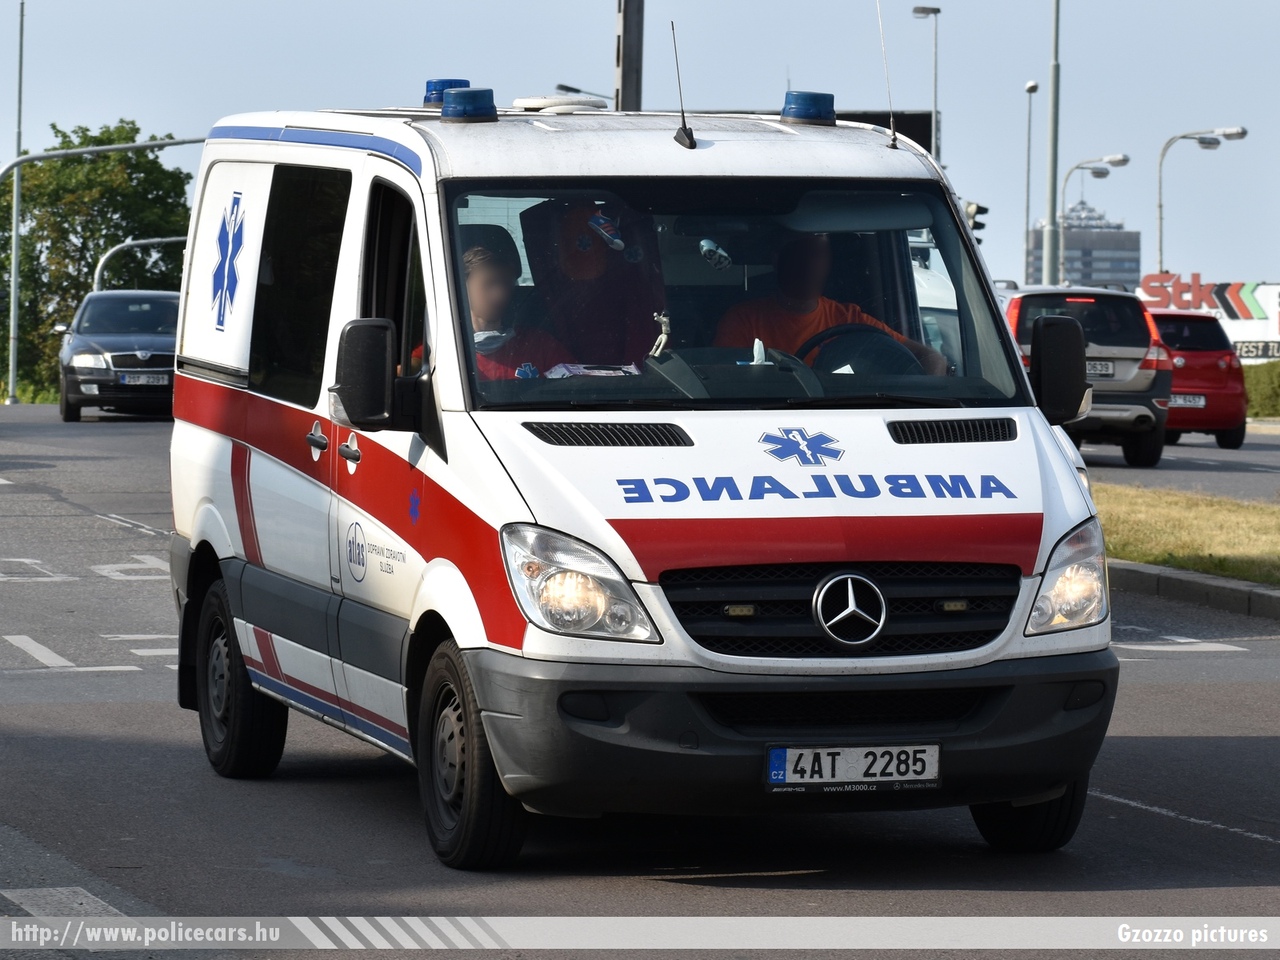 Mercedes Sprinter II, fotó: Gzozzo pictures
Keywords: cseh Csehország czech ambulance mentő mentőautó